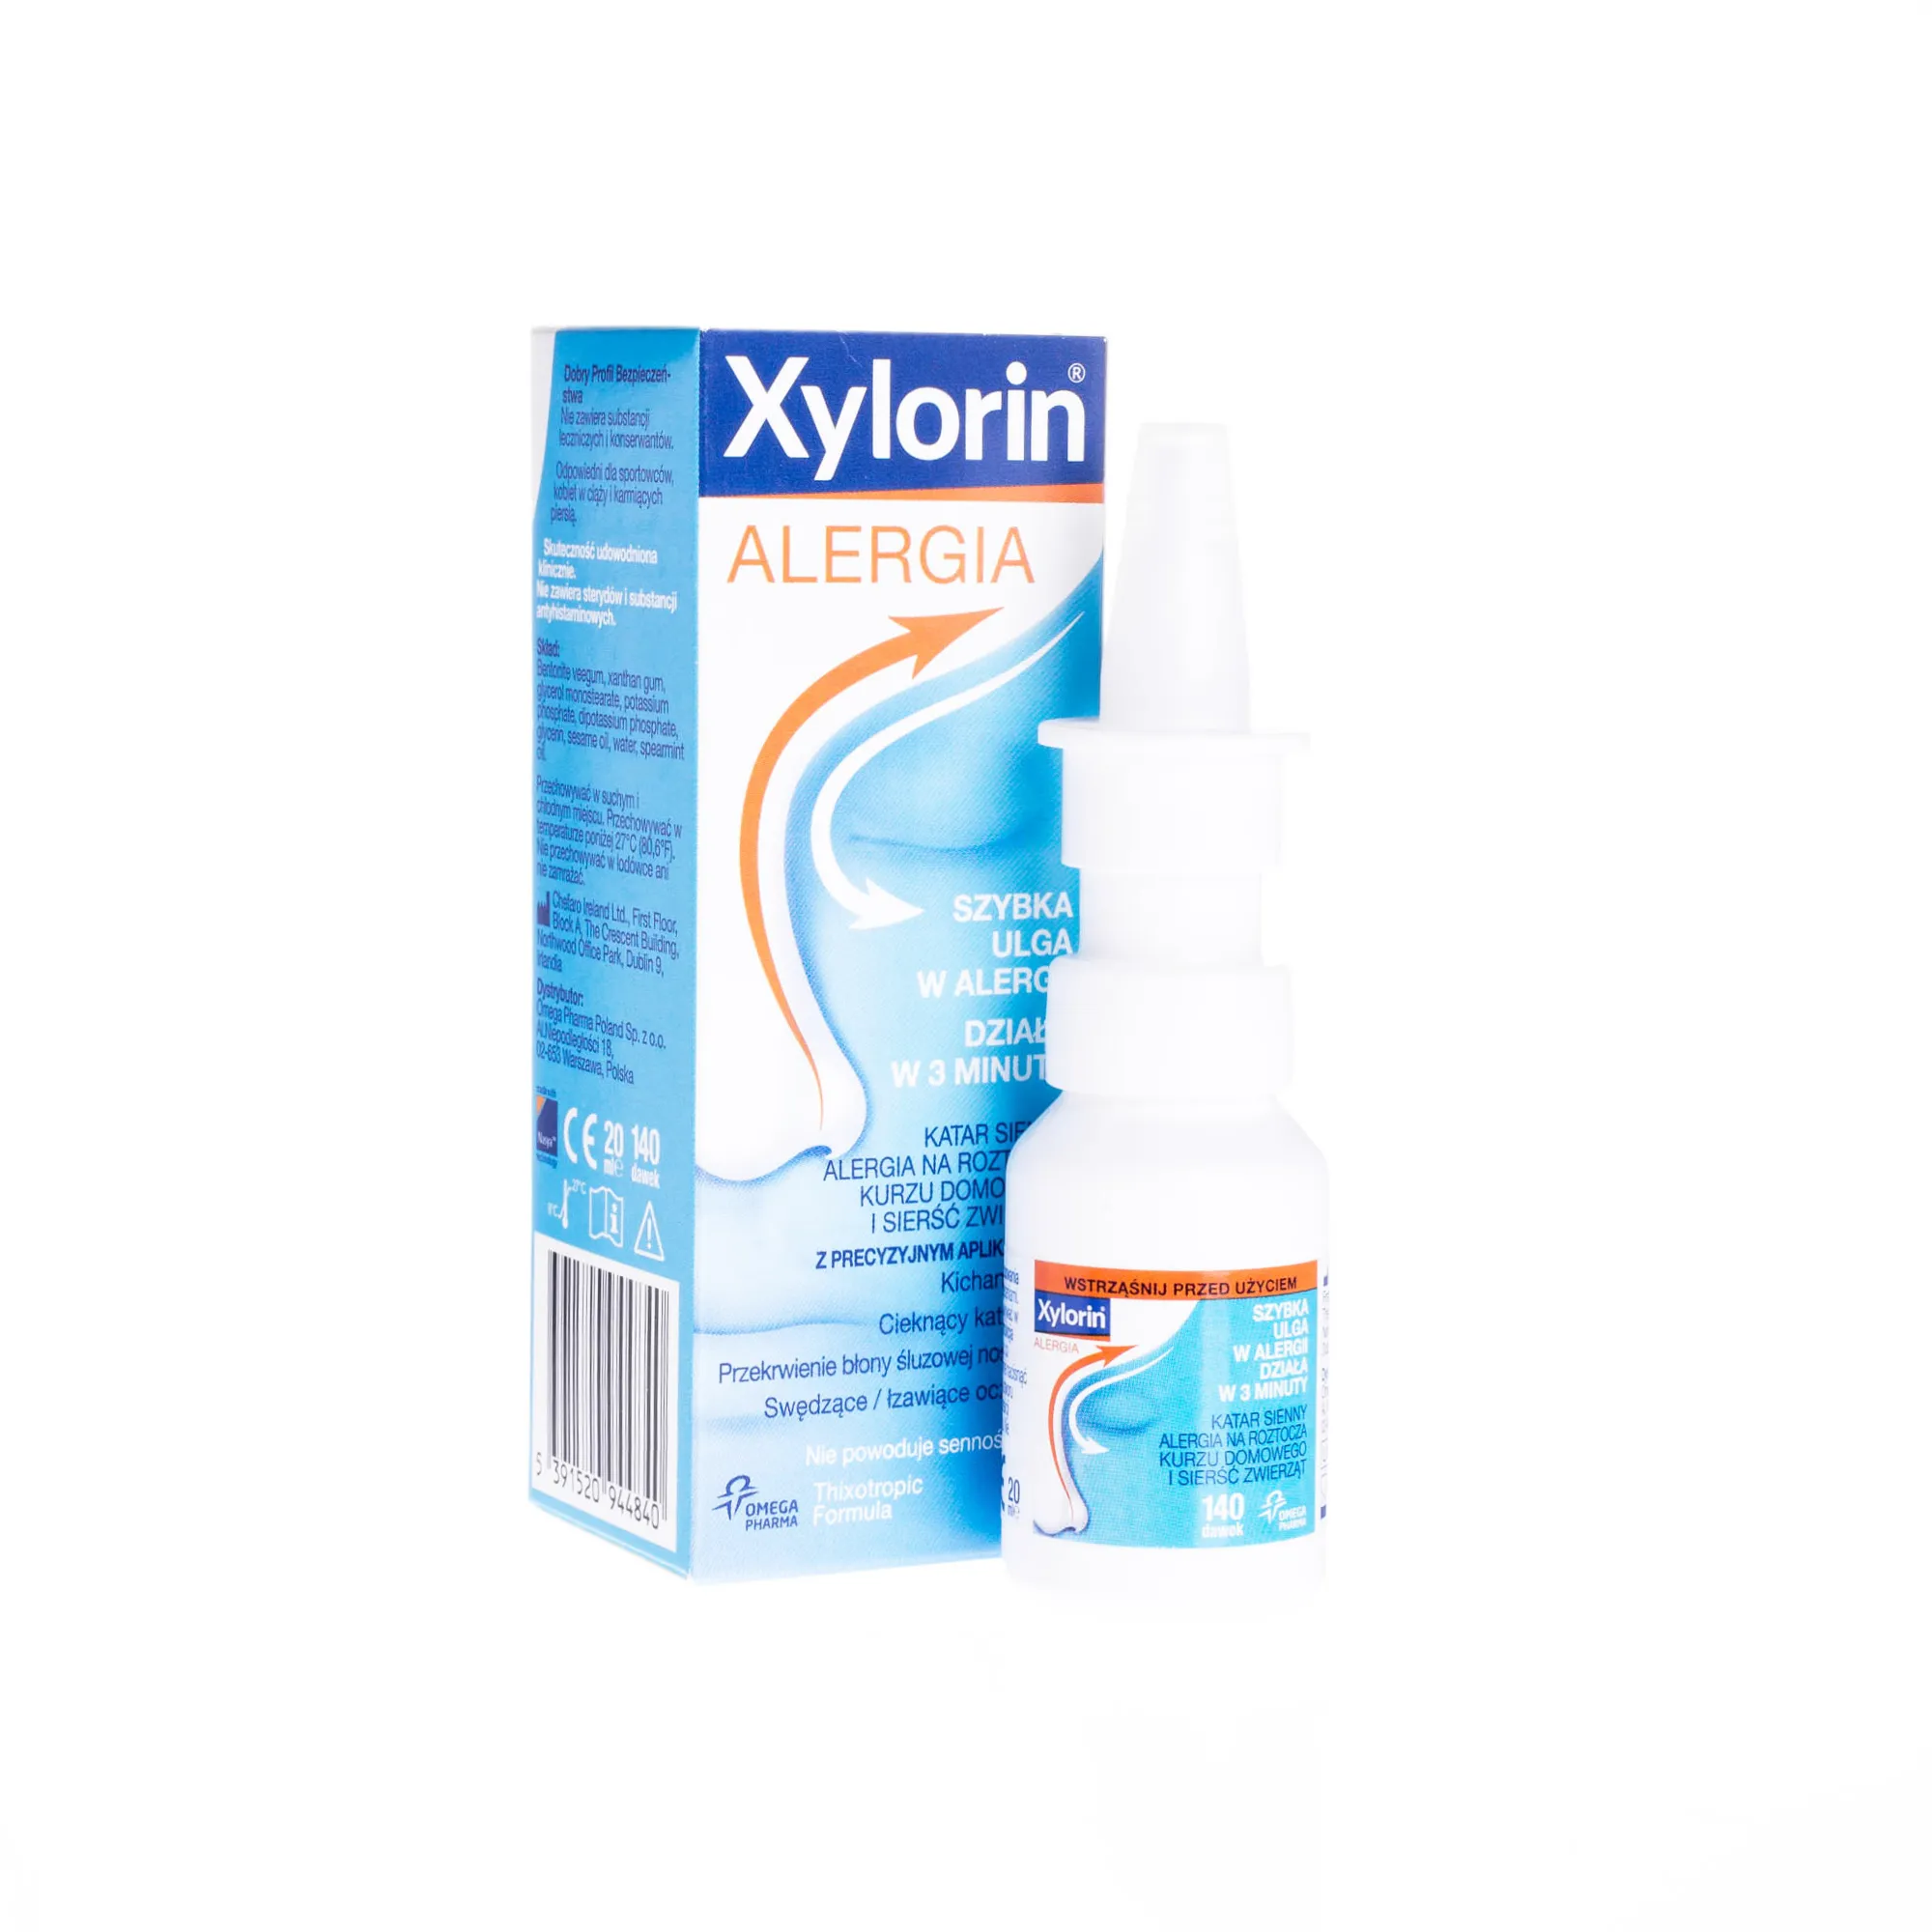 Xylorin Alergia - Aplikator przeciwdziałający katarowi powstałemu w skutek alergii, 20 ml 